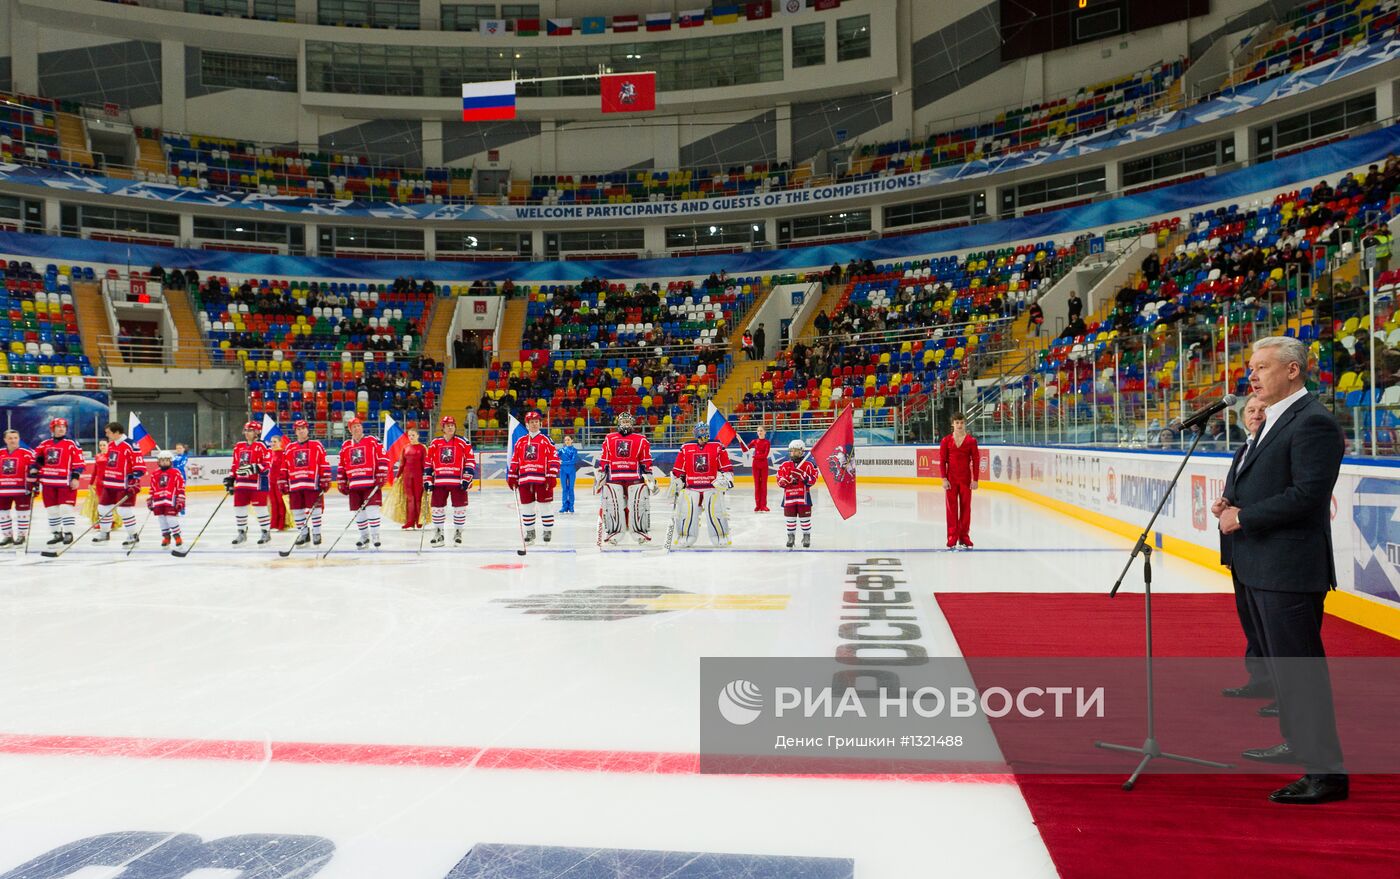 Открытие зимнего хоккейного сезона во дворце спорта "Мегаспорт"